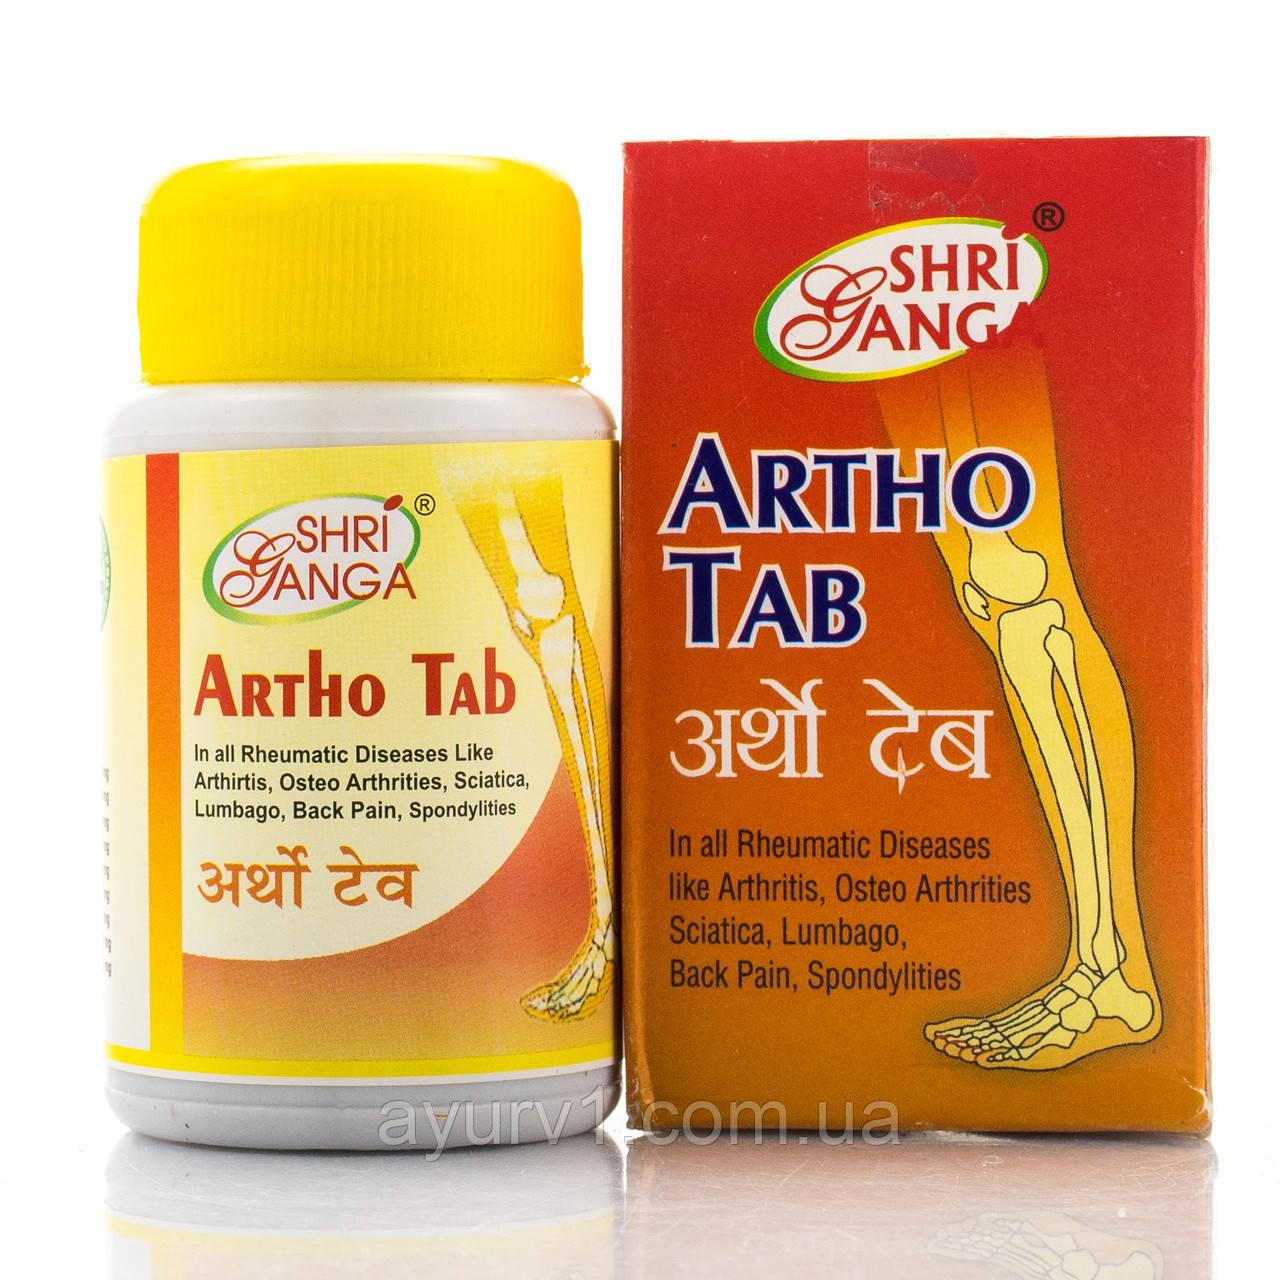 Артхо таб Шрі Ганга/ Artho tab 100 таб. Shri Ganga у разі артриту, артрозу, подагри, люмбаго, ревматизму